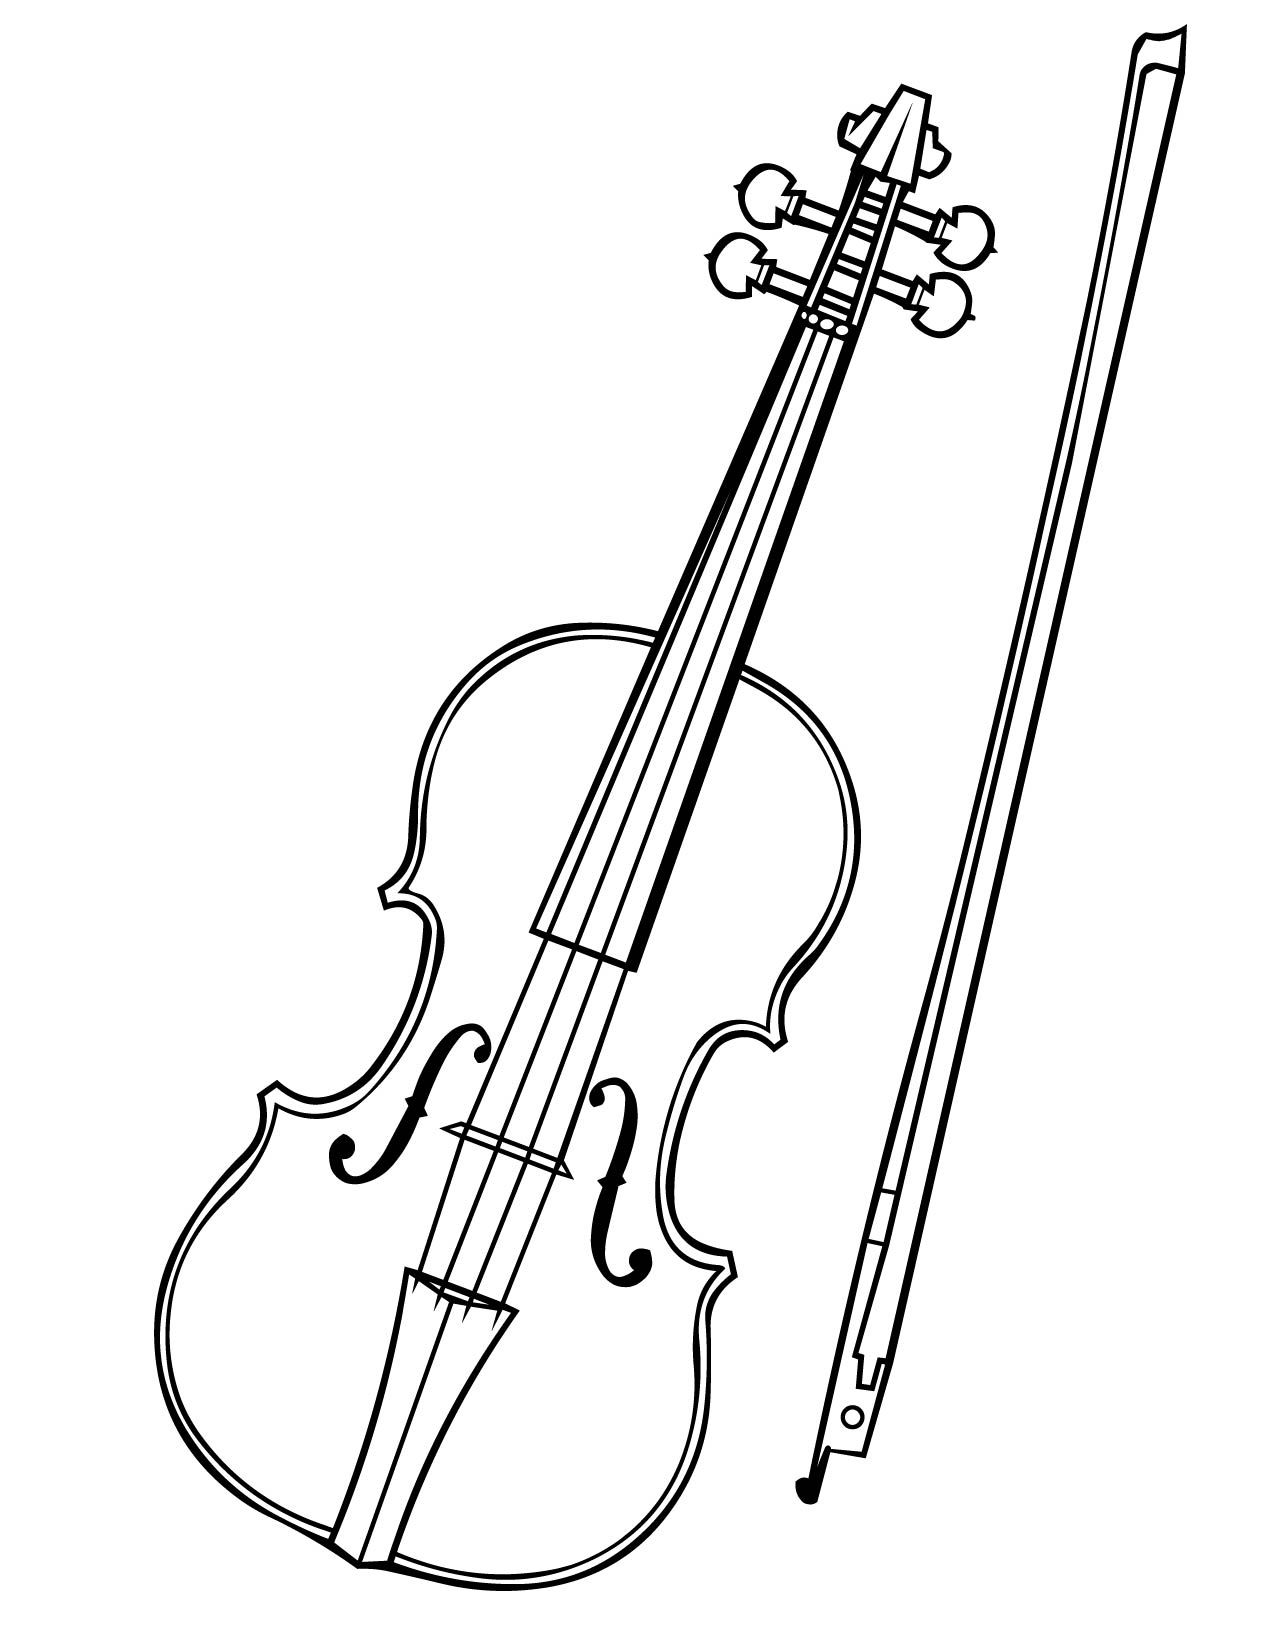 Как выглядит скрипка рисунок